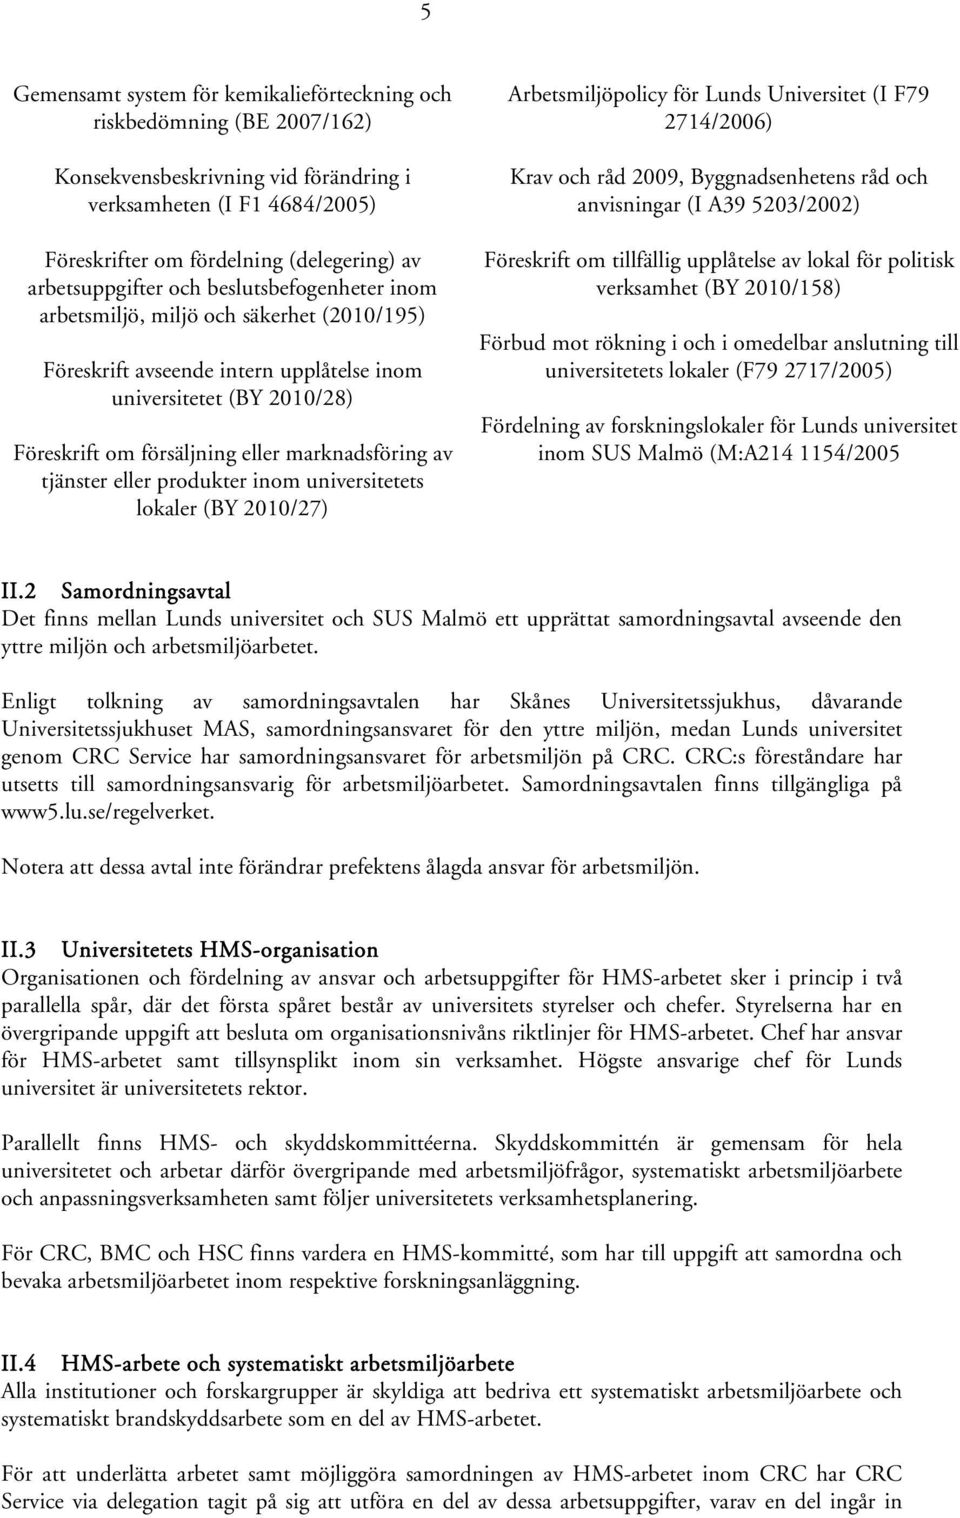 marknadsföring av tjänster eller produkter inom universitetets lokaler (BY 2010/27) Arbetsmiljöpolicy för Lunds Universitet (I F79 2714/2006) Krav och råd 2009, Byggnadsenhetens råd och anvisningar